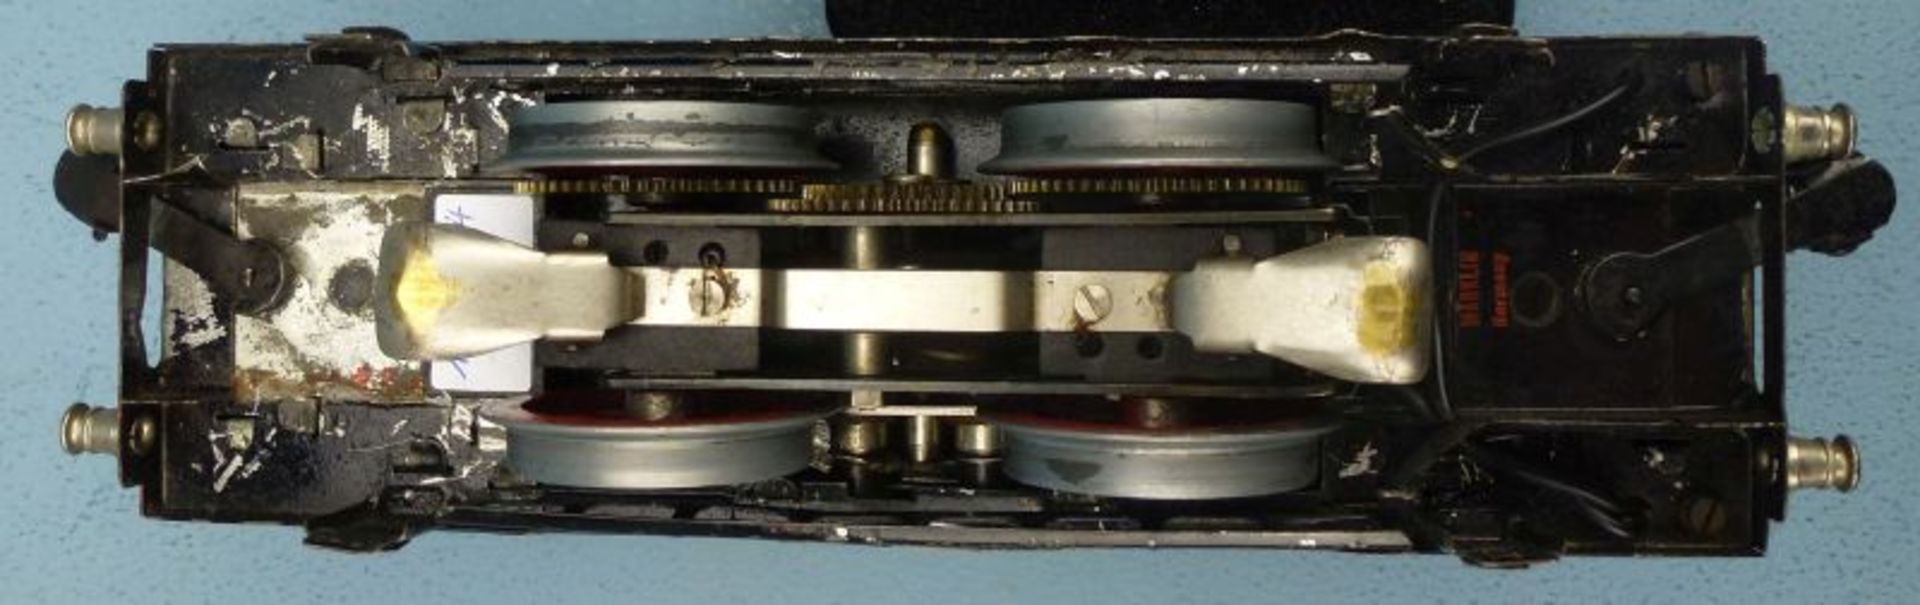 Elektrolok RS 66/12910, Märklin, 1930er Jahre< - Bild 3 aus 3